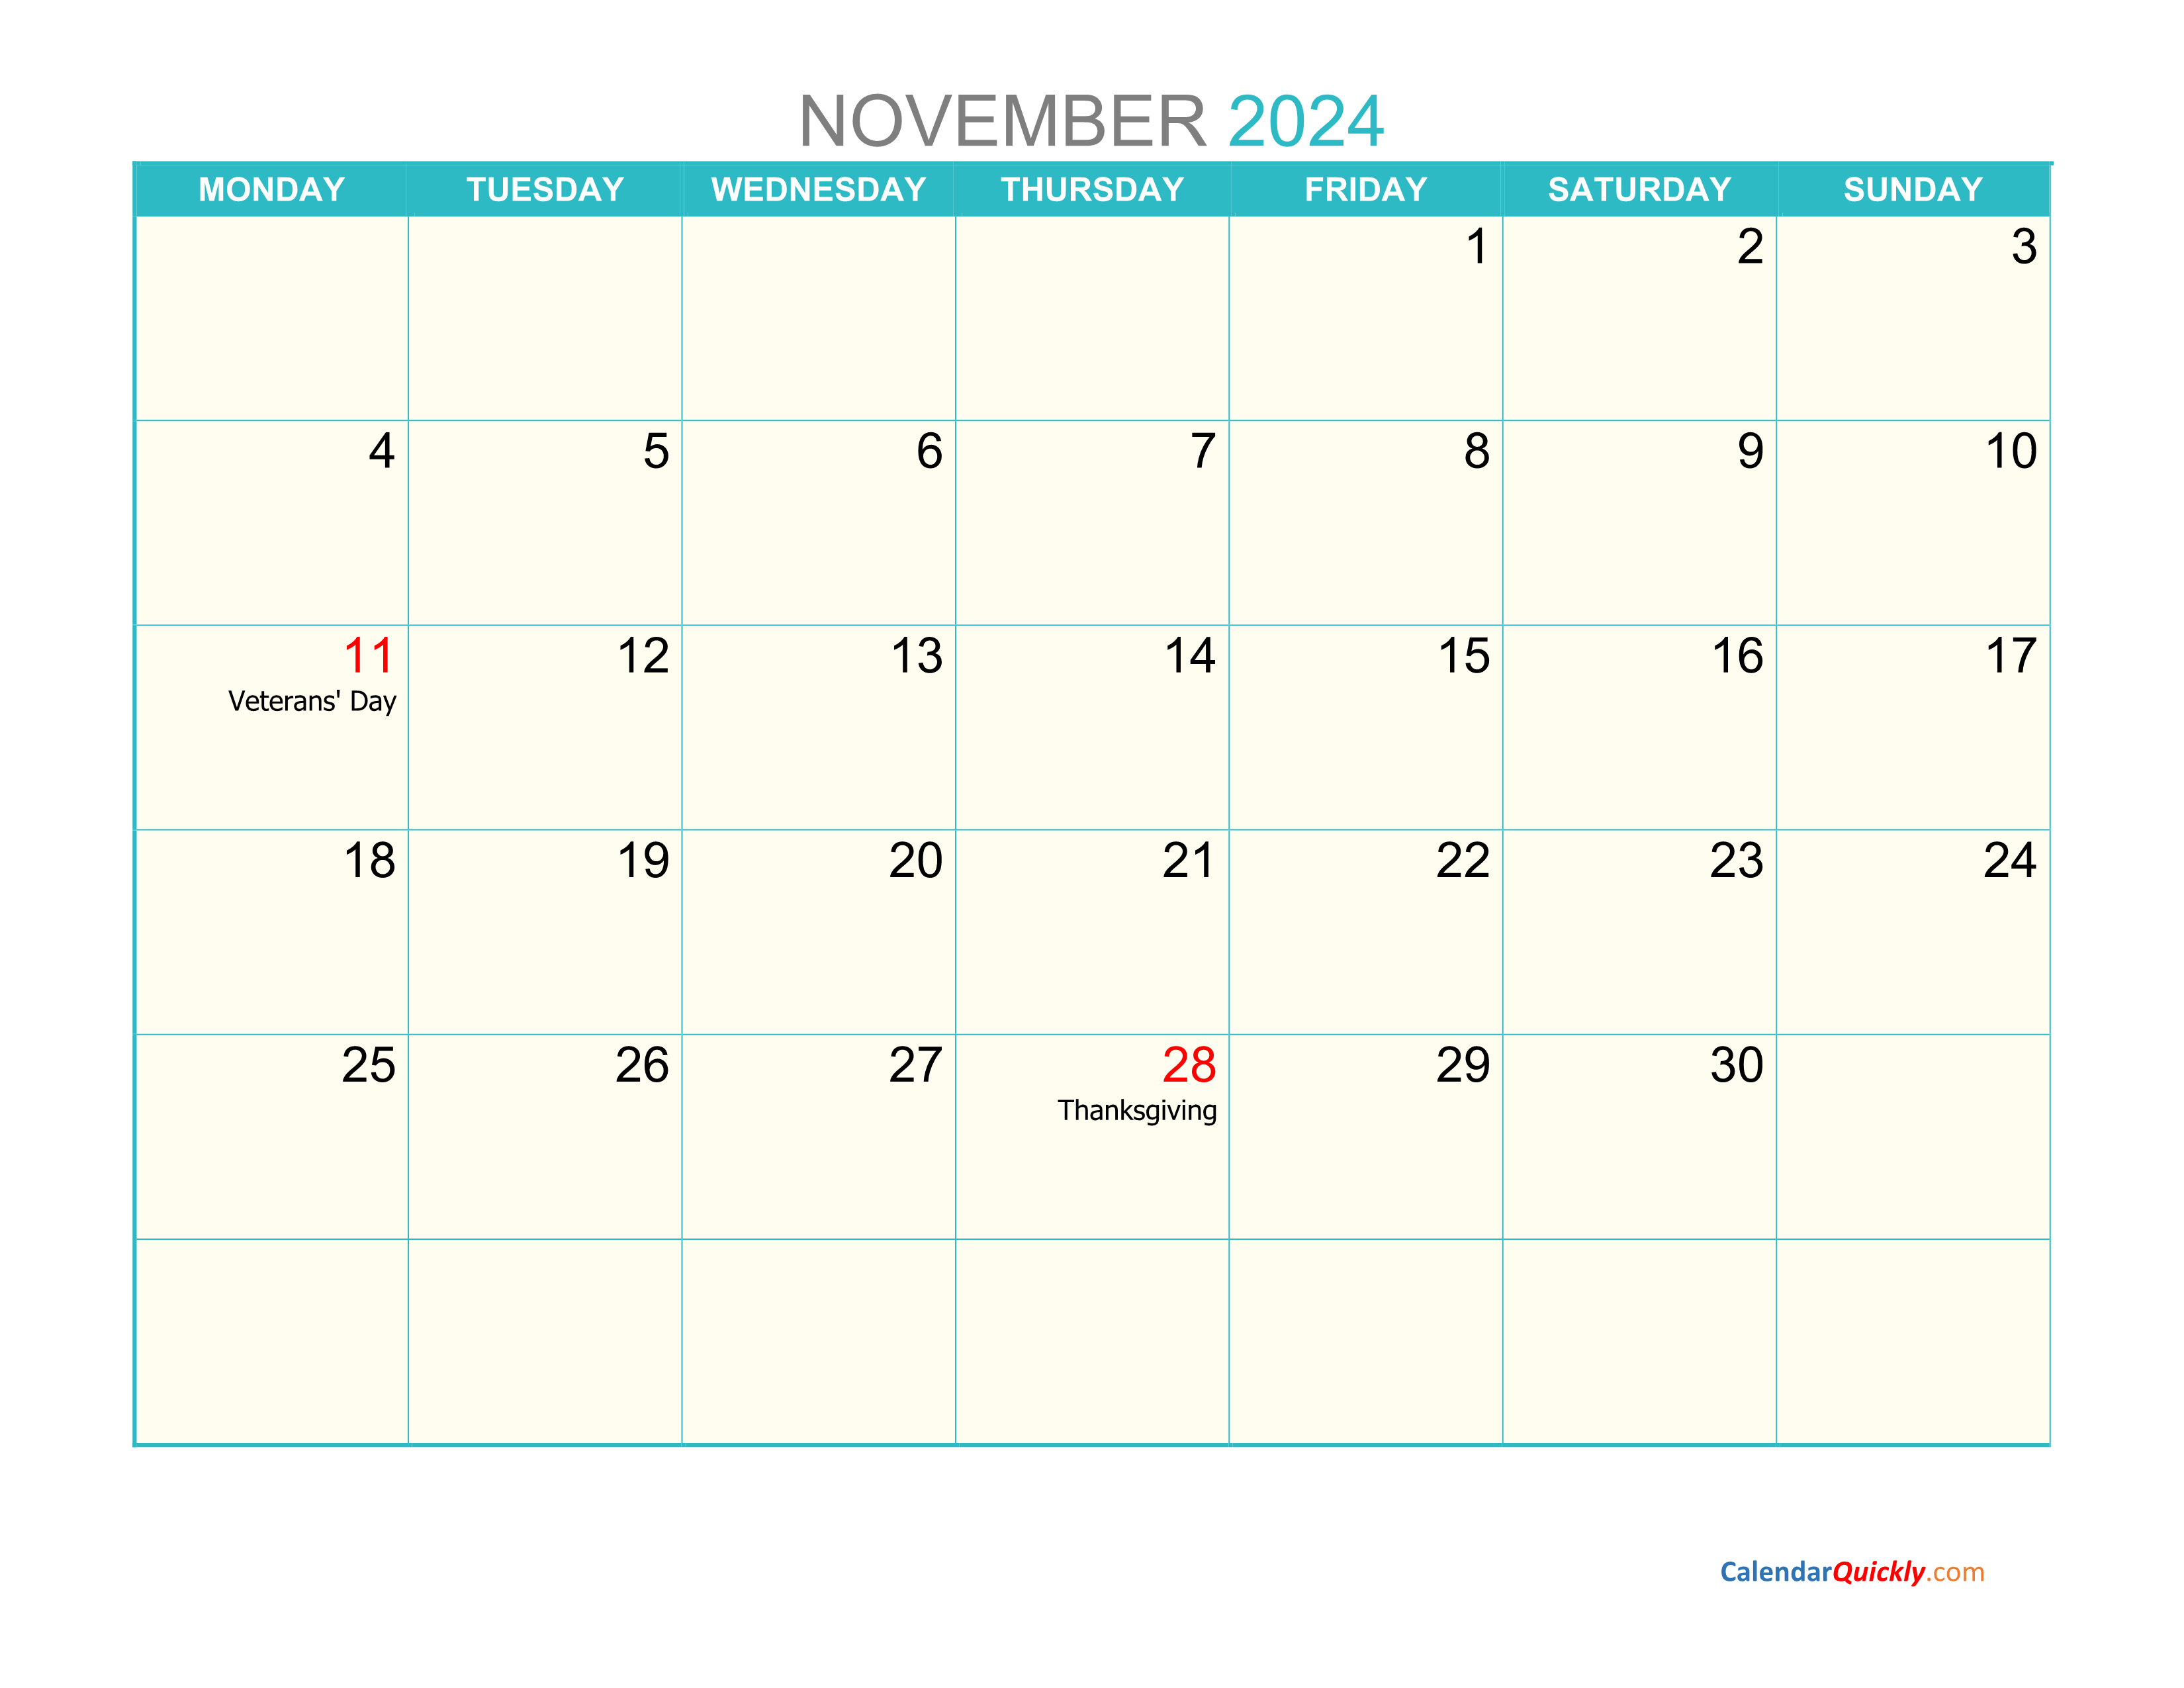 november-monday-2024-calendar-printable-calendar-quickly